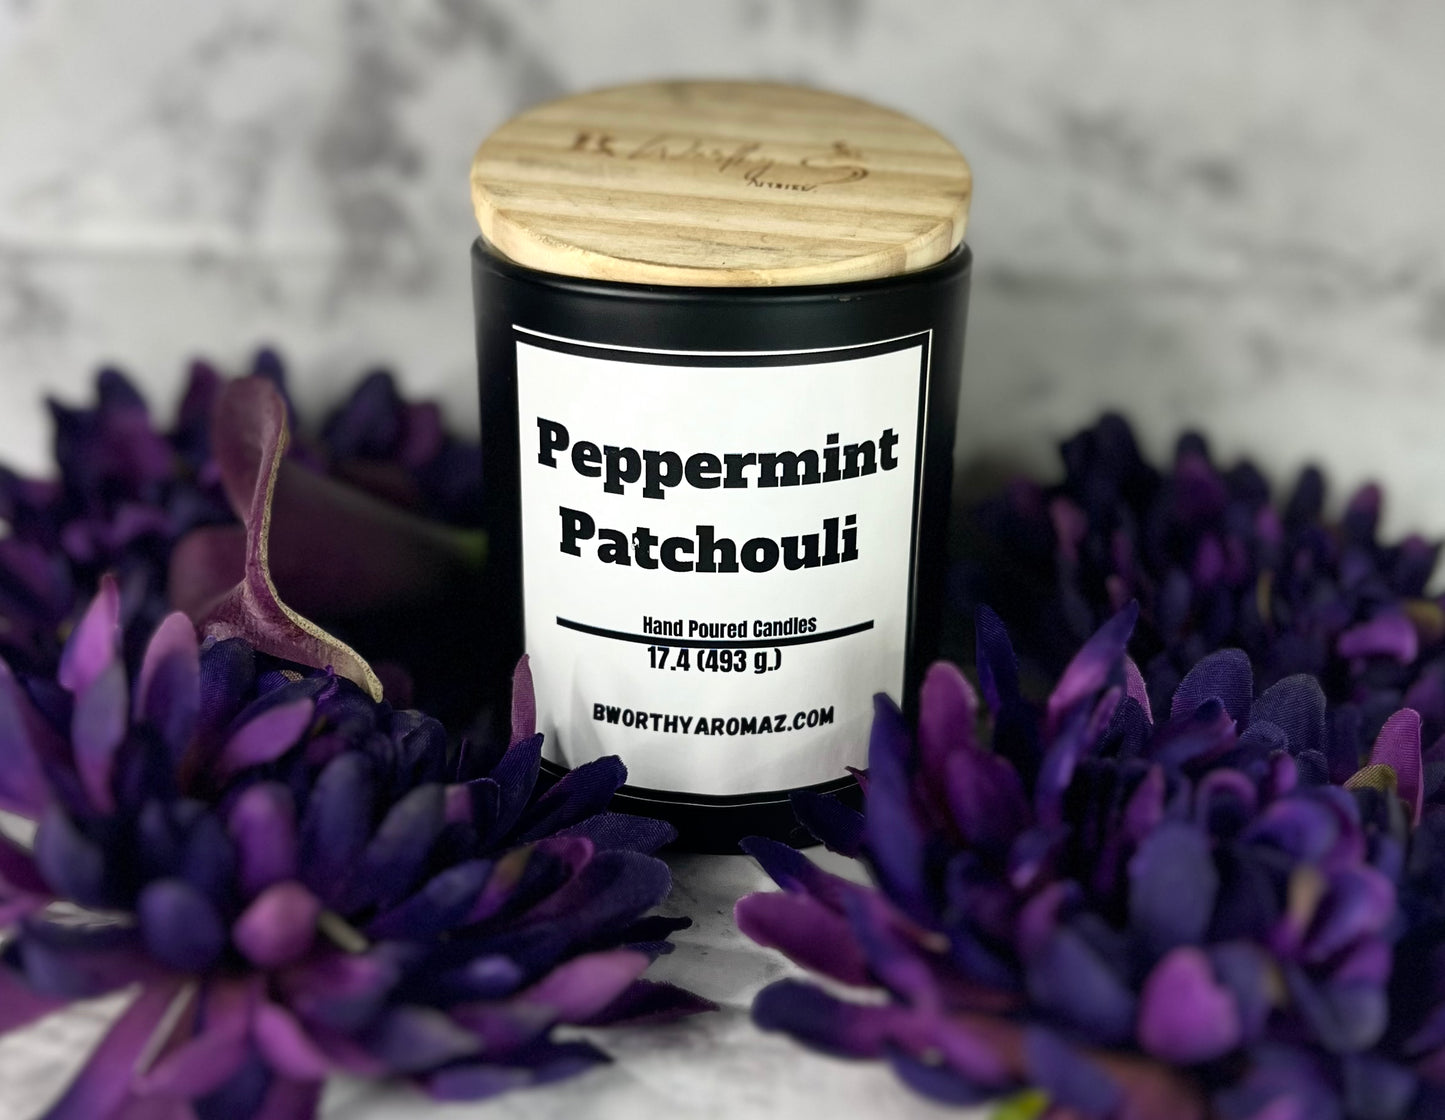 Peppermint Patchouli